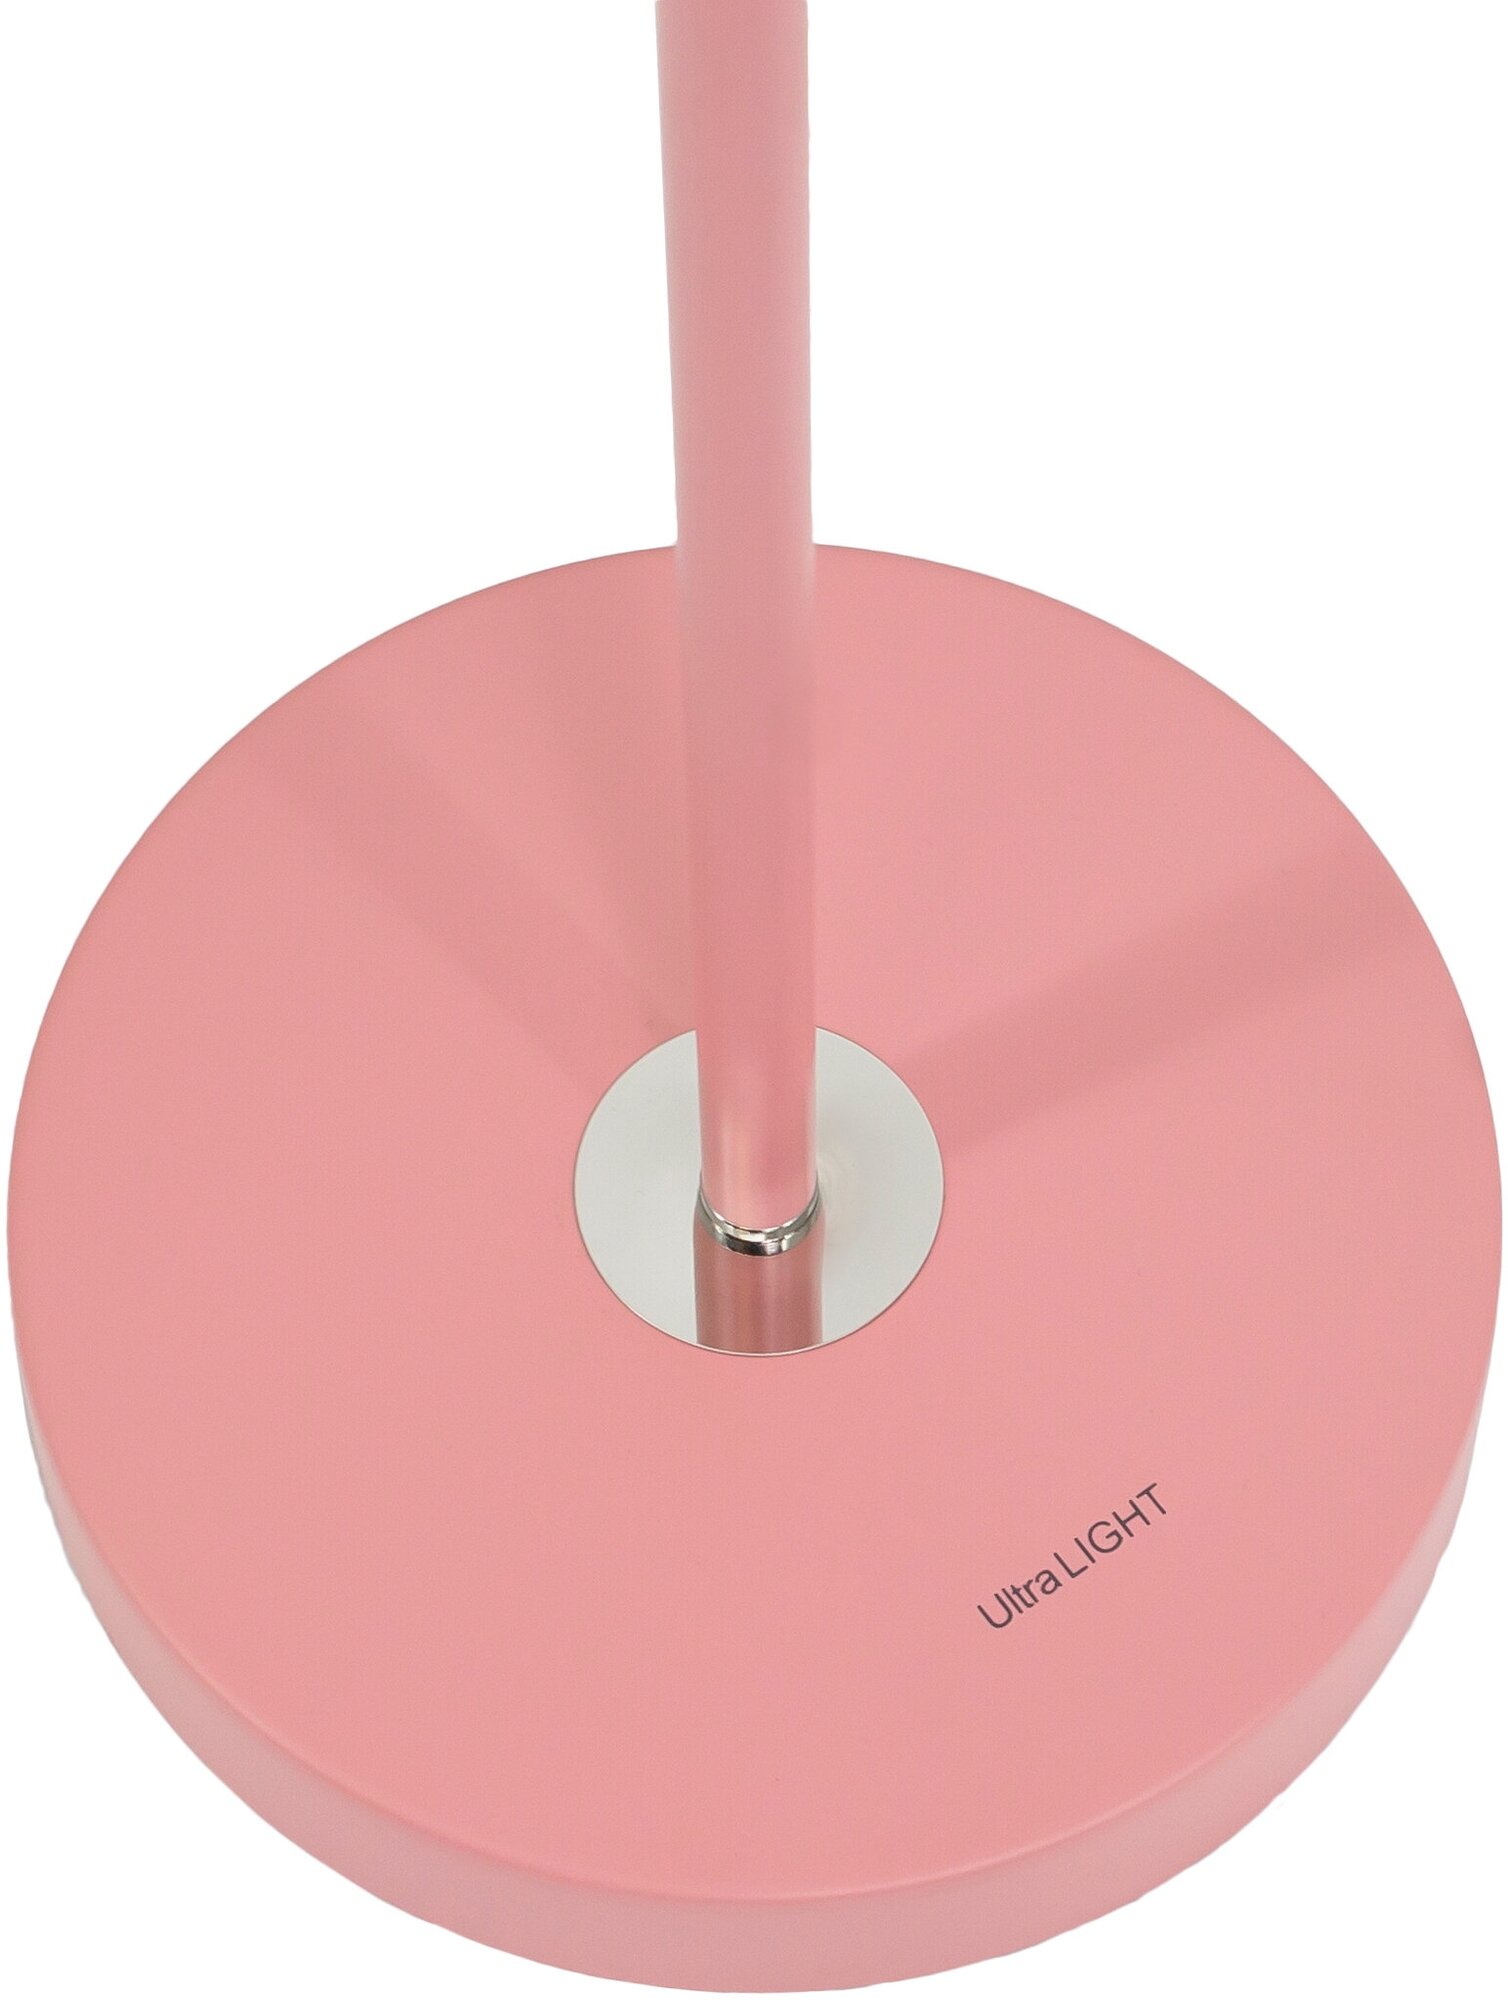 Напольный светильник с гибкой стойкой, Ultra LIGHT MT2018 60Вт. Торшер. Розовый матовый